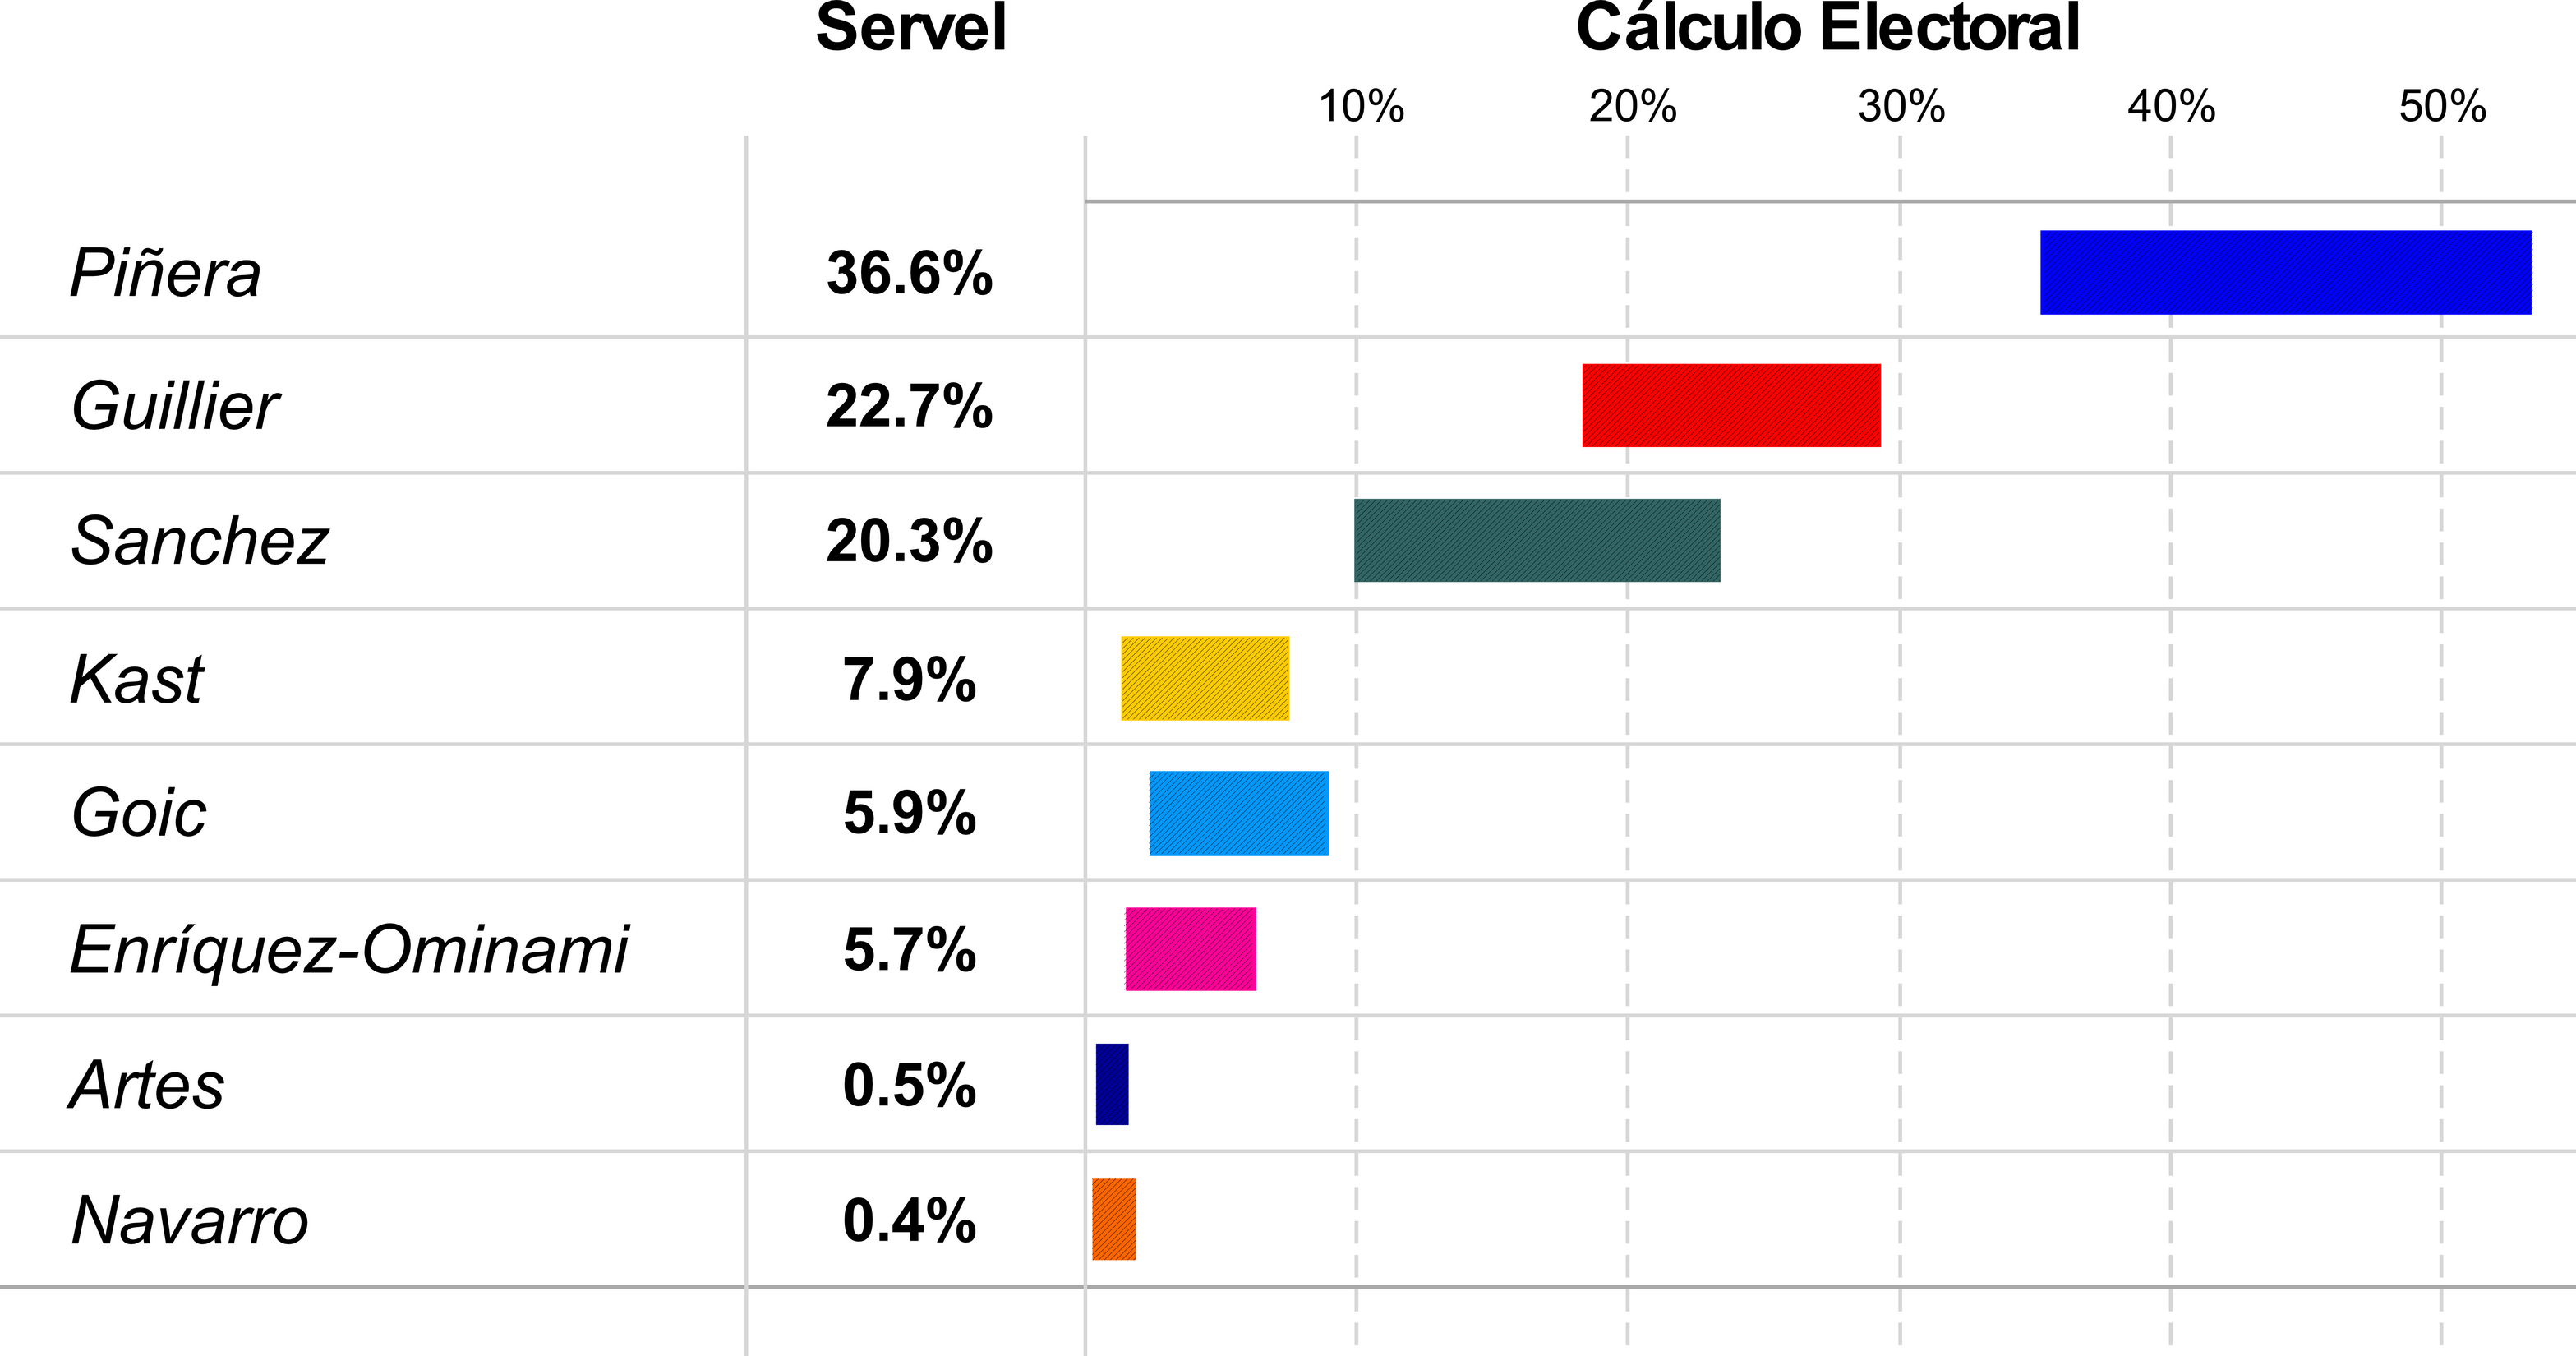 Estimación de Cálculo Electoral y resultados Servel Elecciones Presidenciales Chile 2017